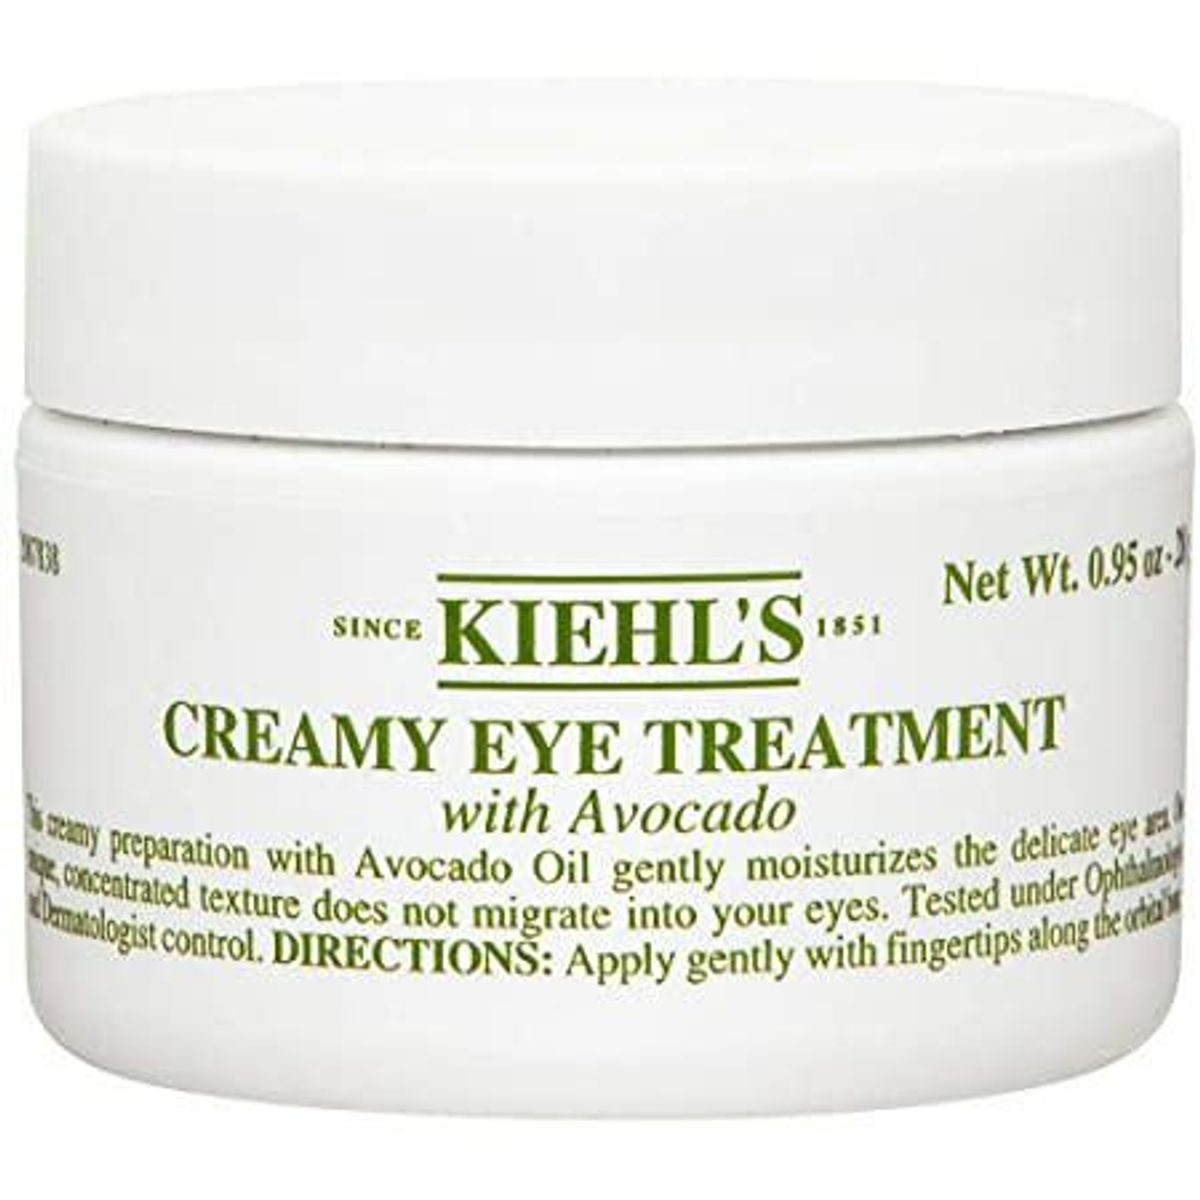 kiehls since 1851 creamy eye treatment with avocado